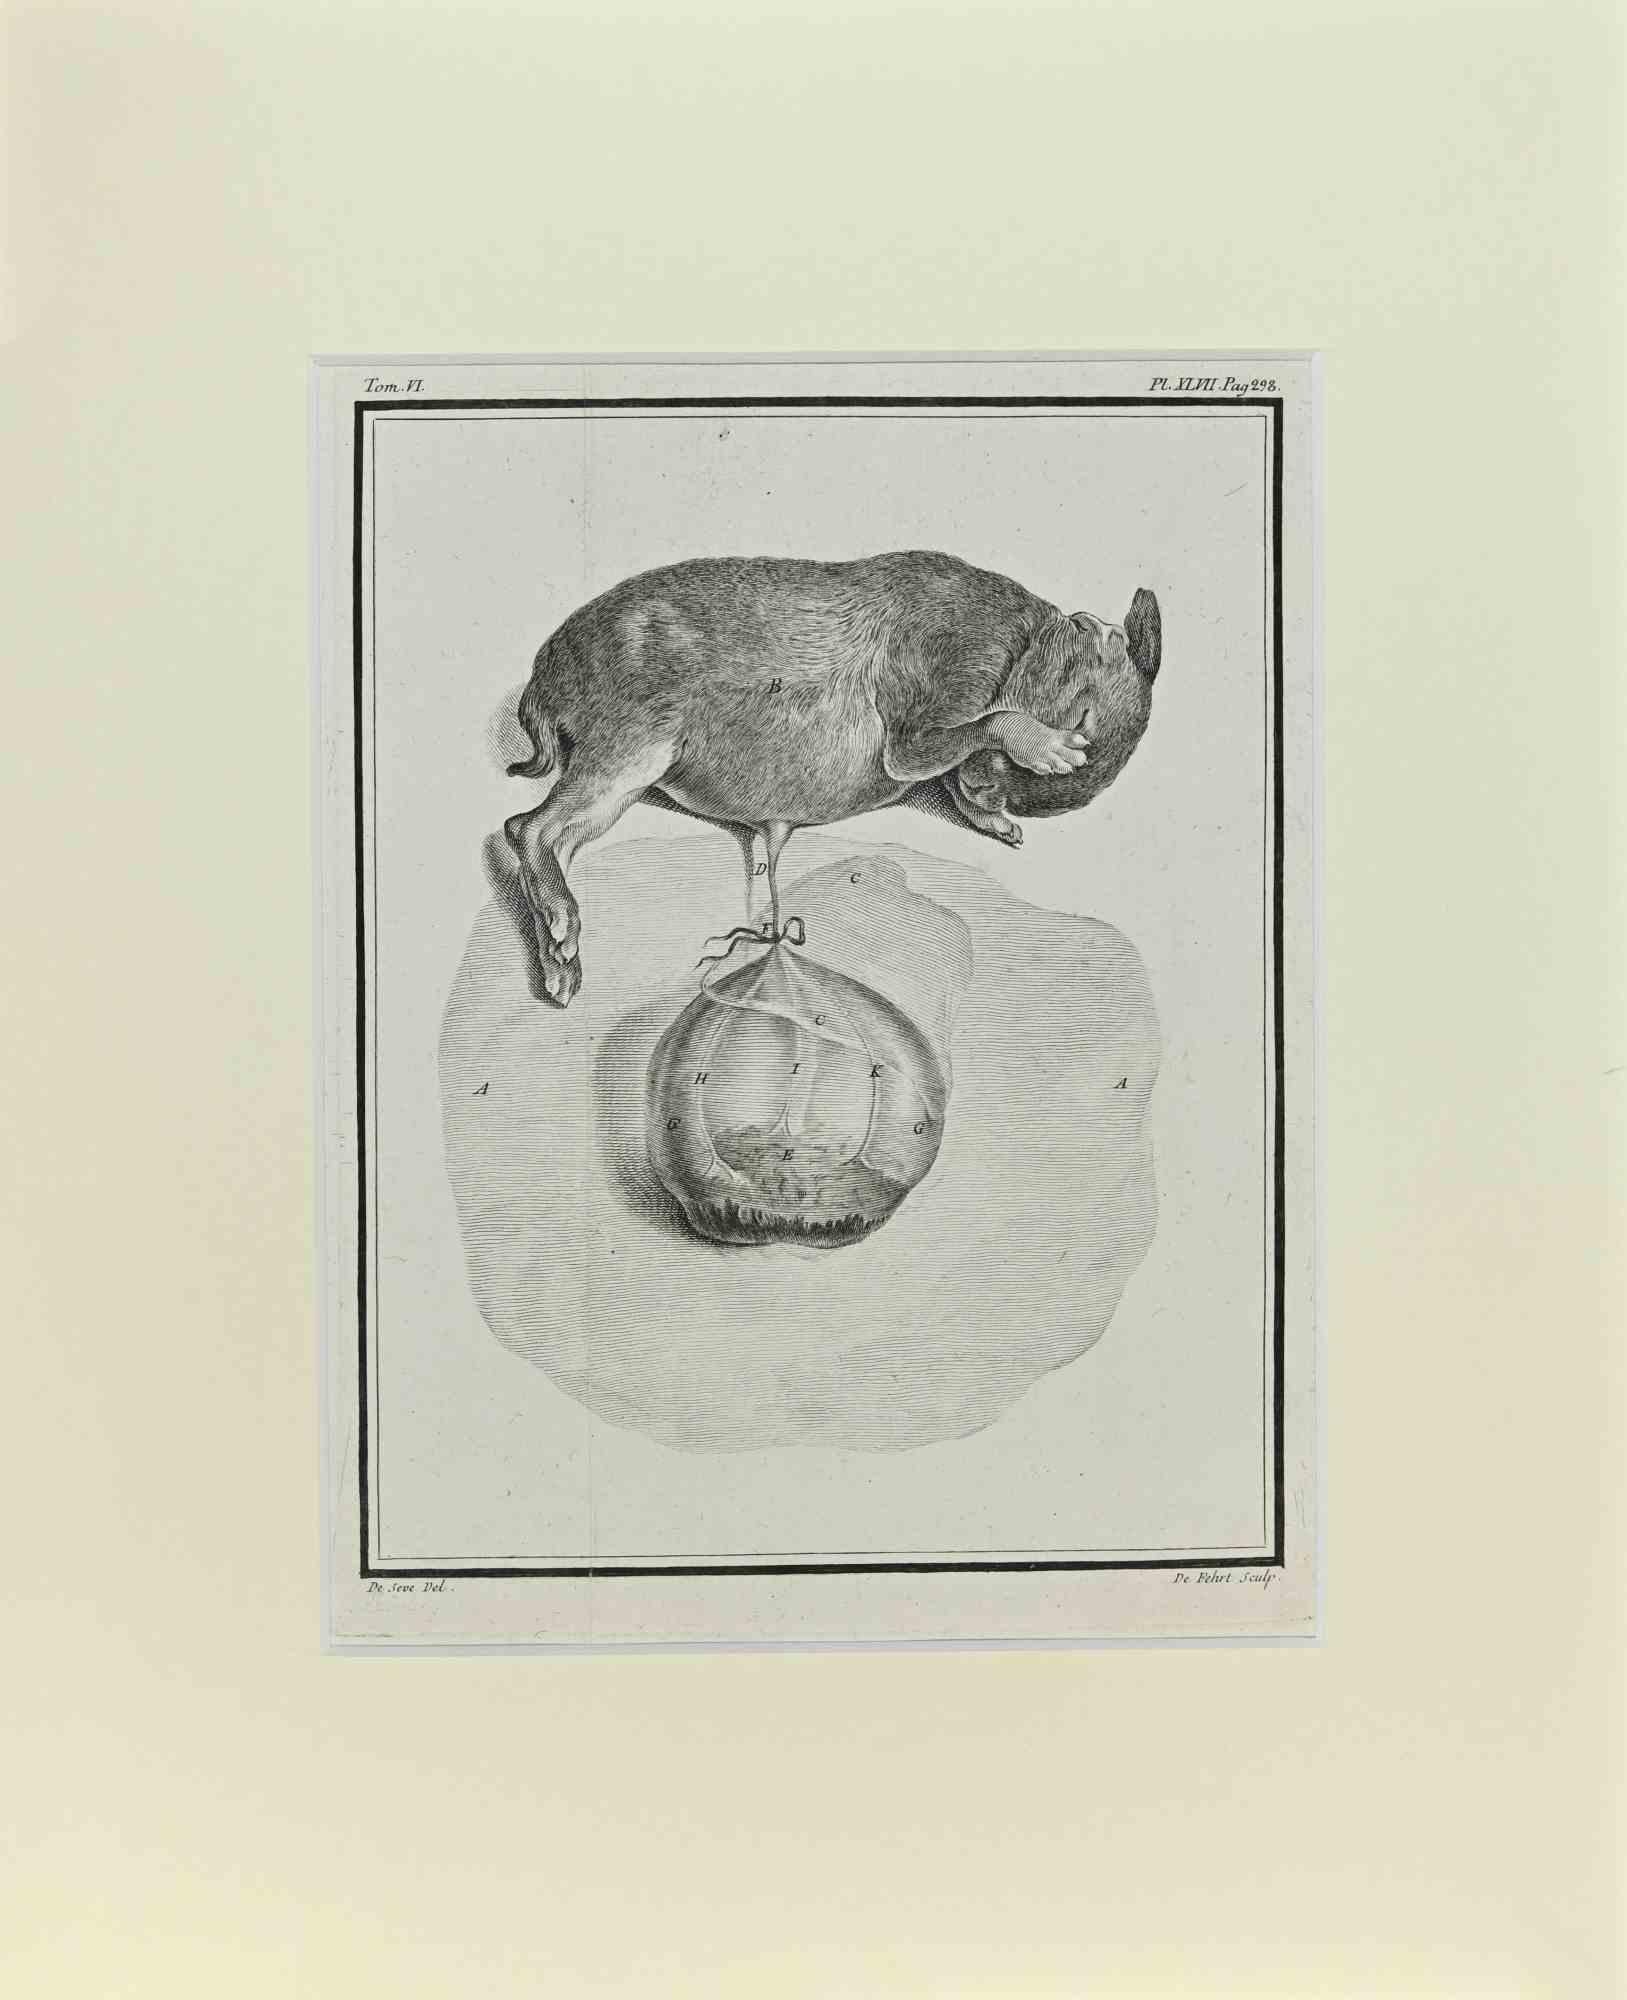 Jacques de Seve Figurative Print - Fetus - Squirrel - Etching by Jacques De sève - 1771